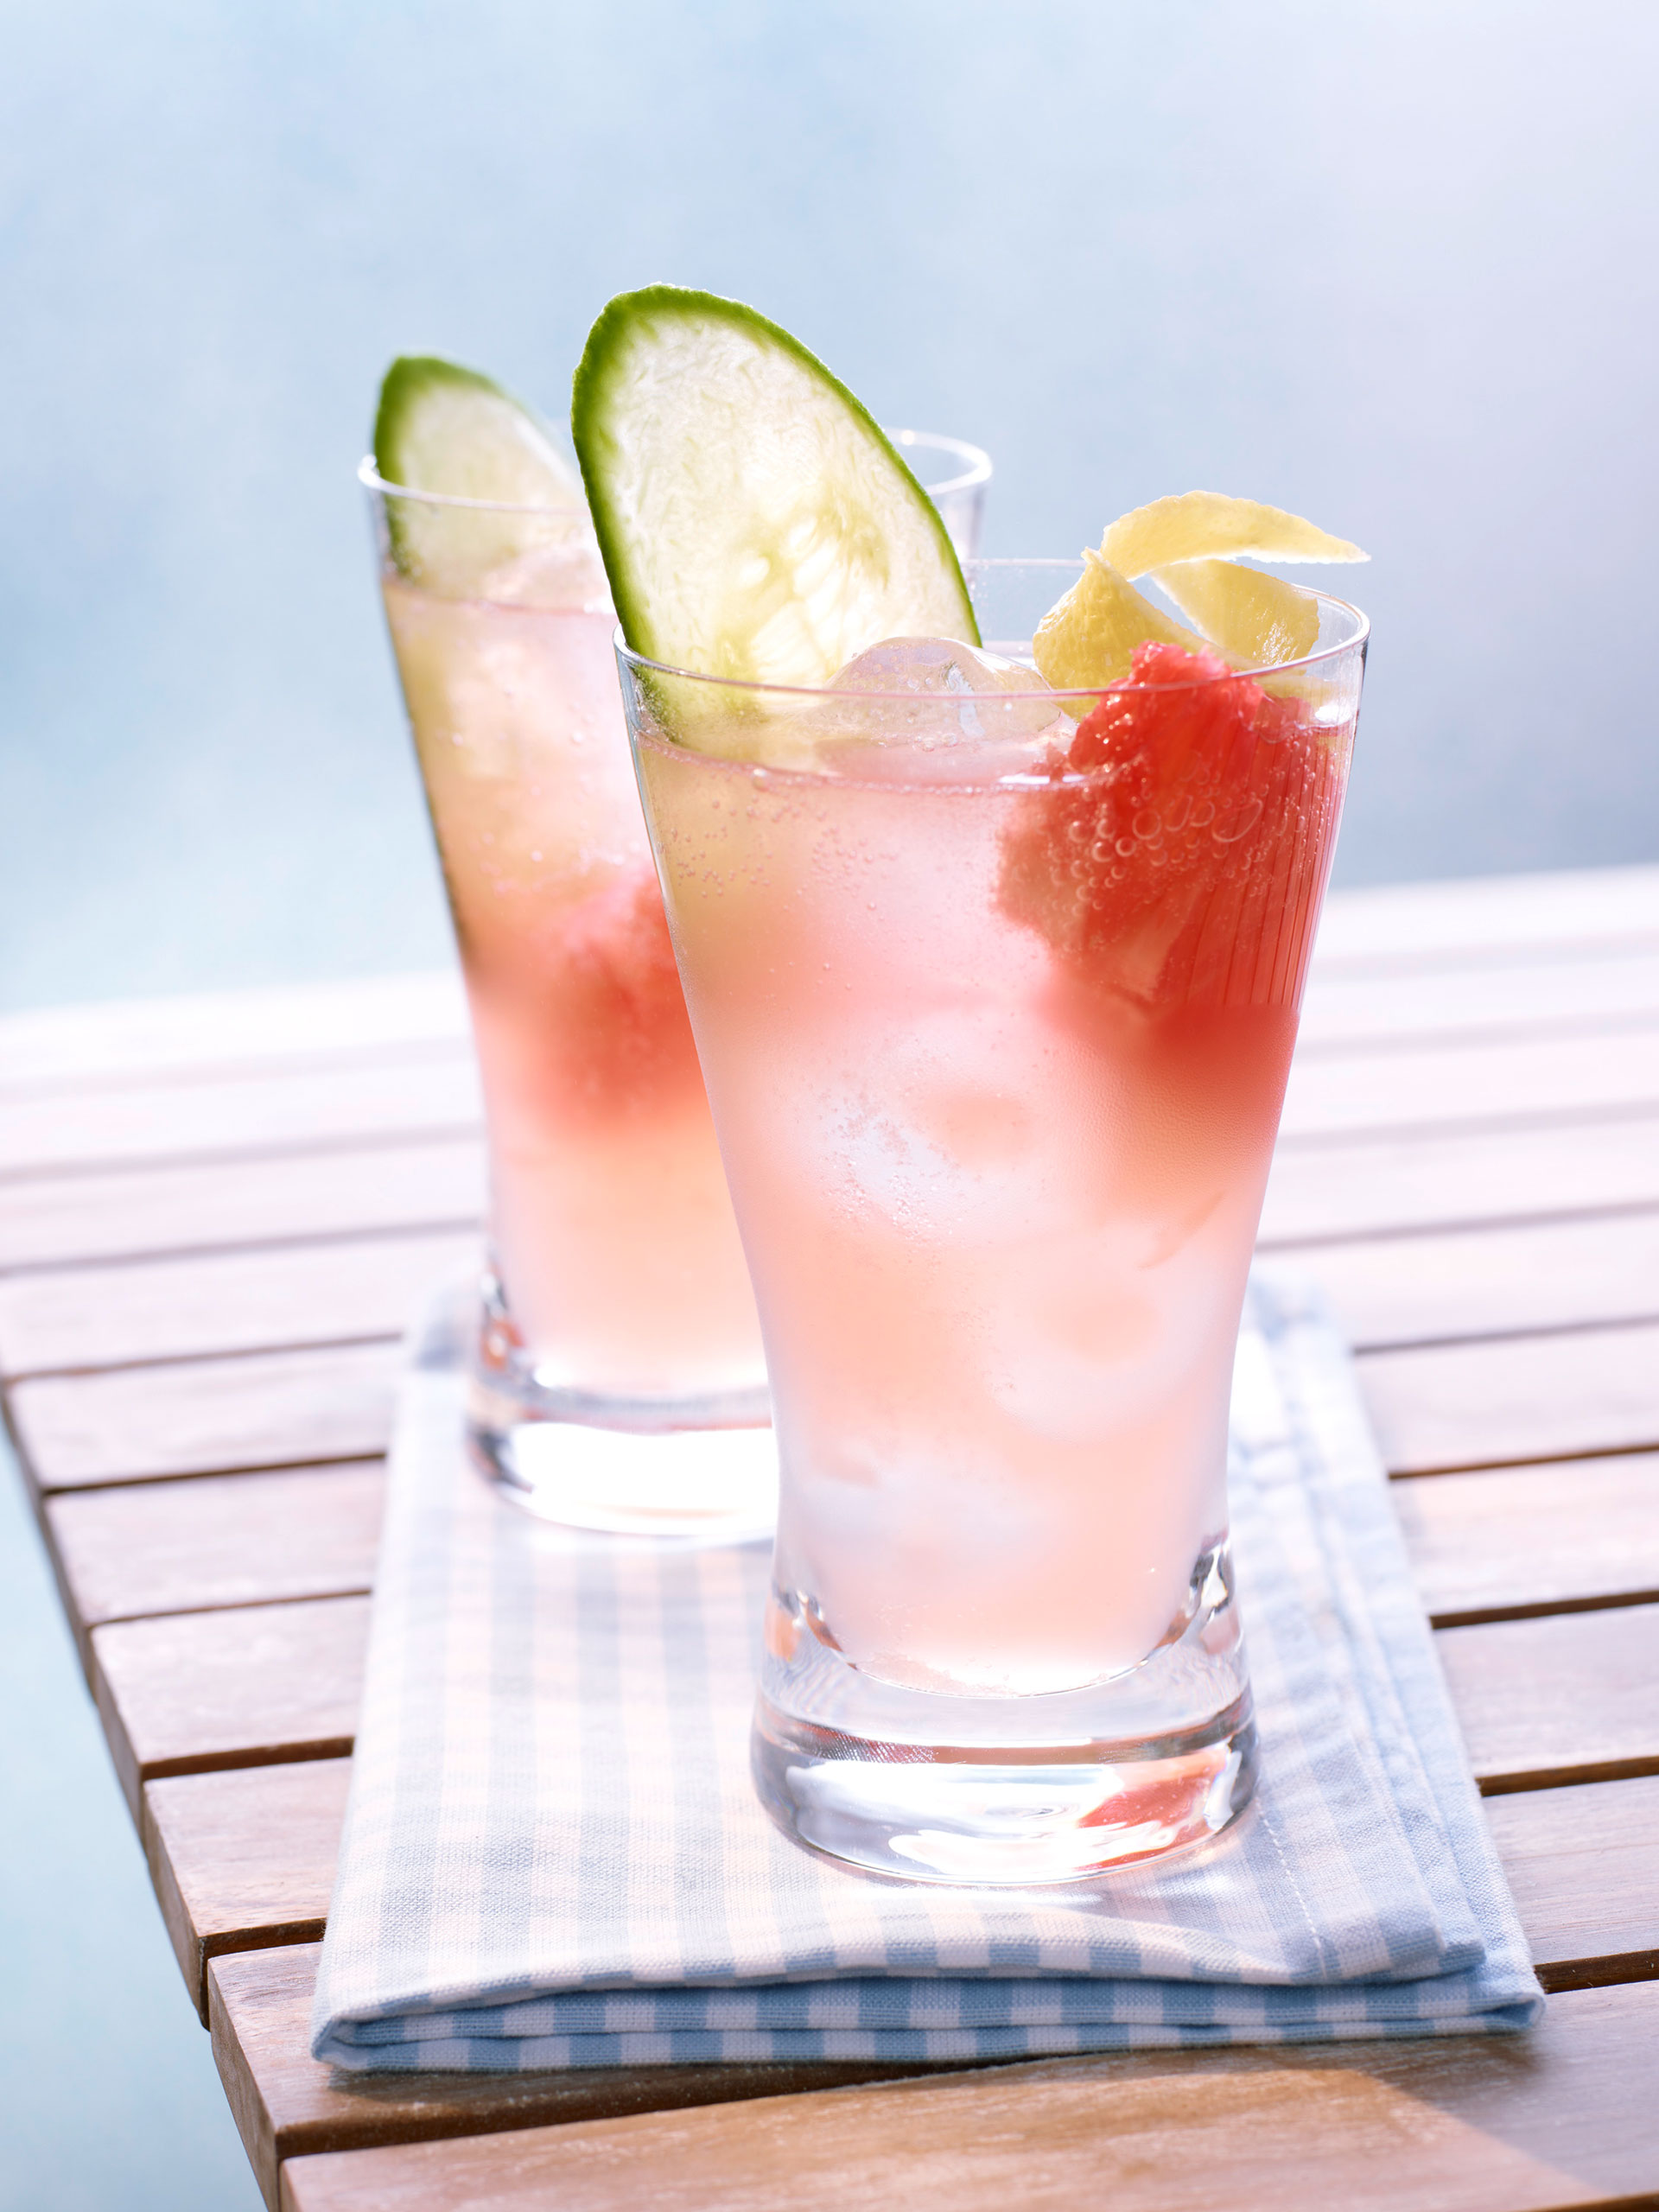 Mineralwasser-Cocktail in Gläsern dekoriert mit Gurkenscheiben, Zitronenschalen und Grapefruitfilet